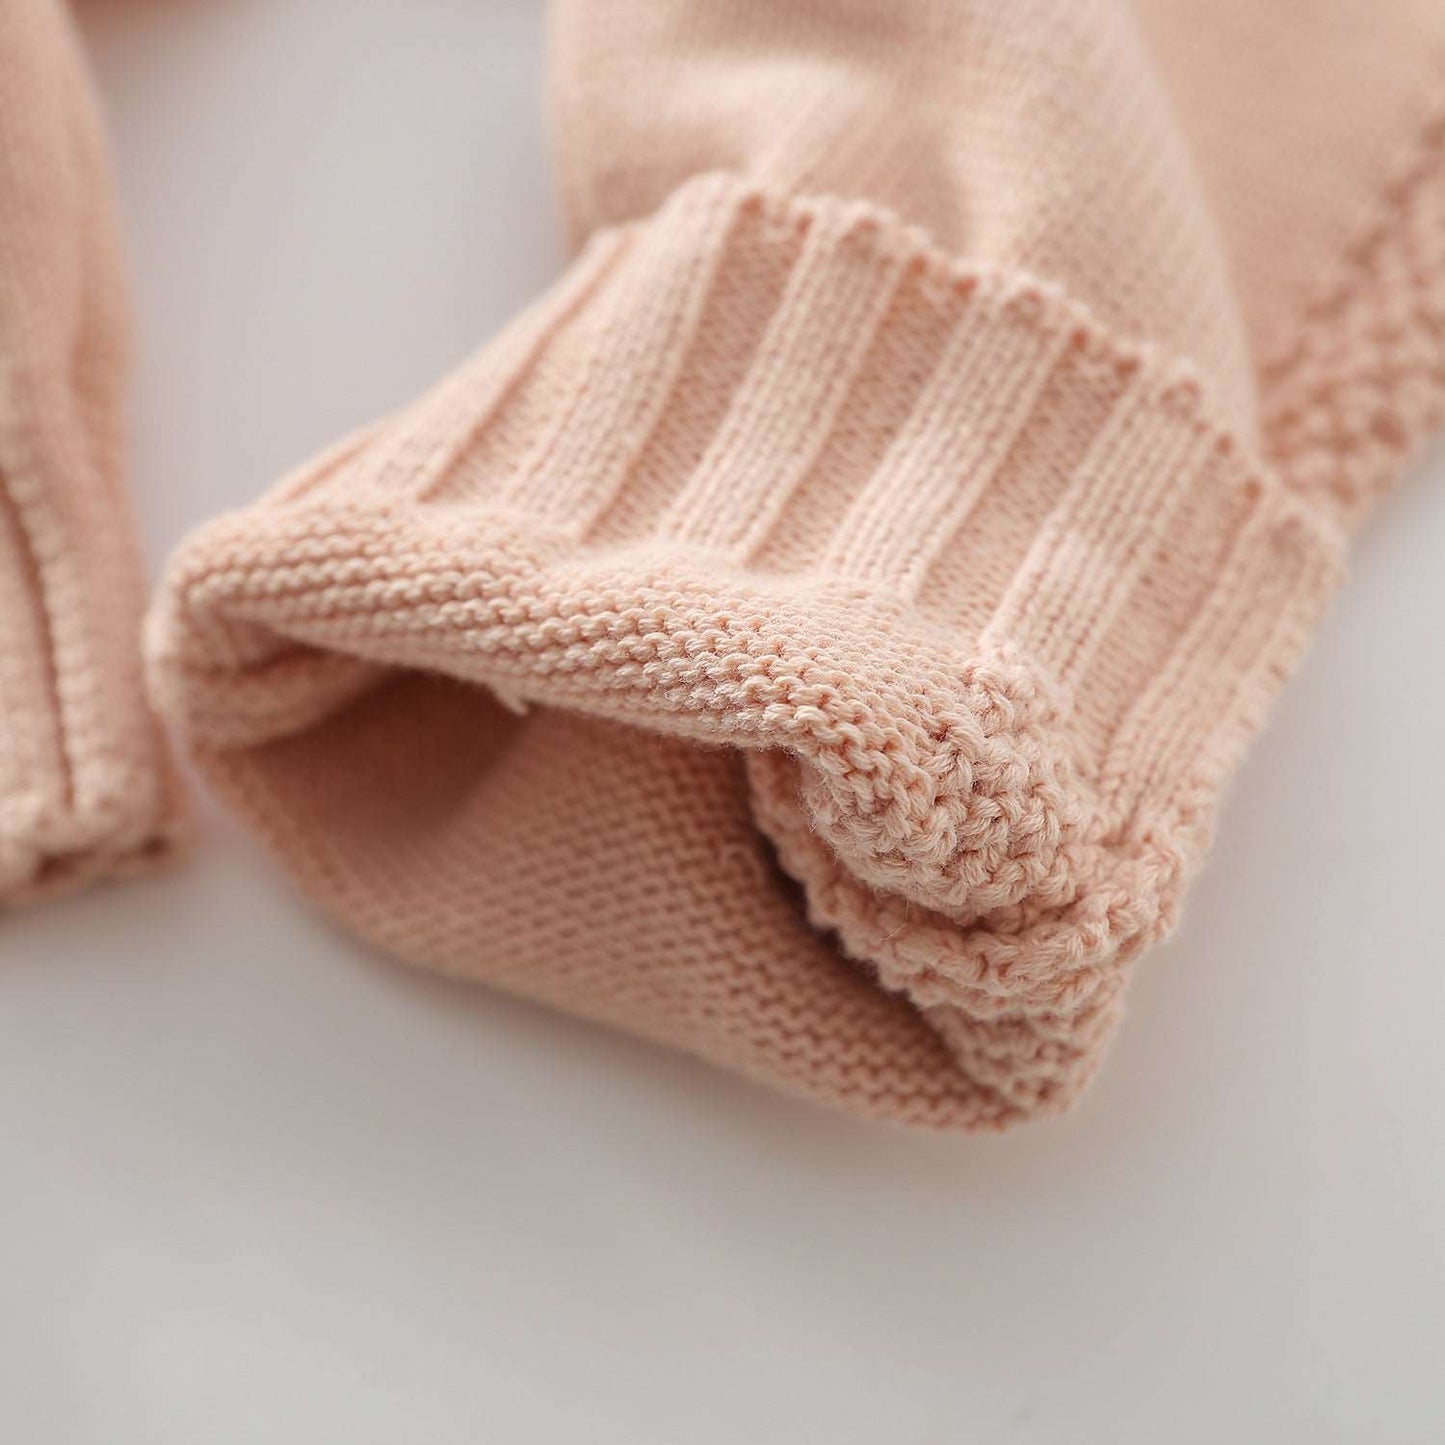 Ruffles n' Frills Knit Jumpsuit || Sandbox